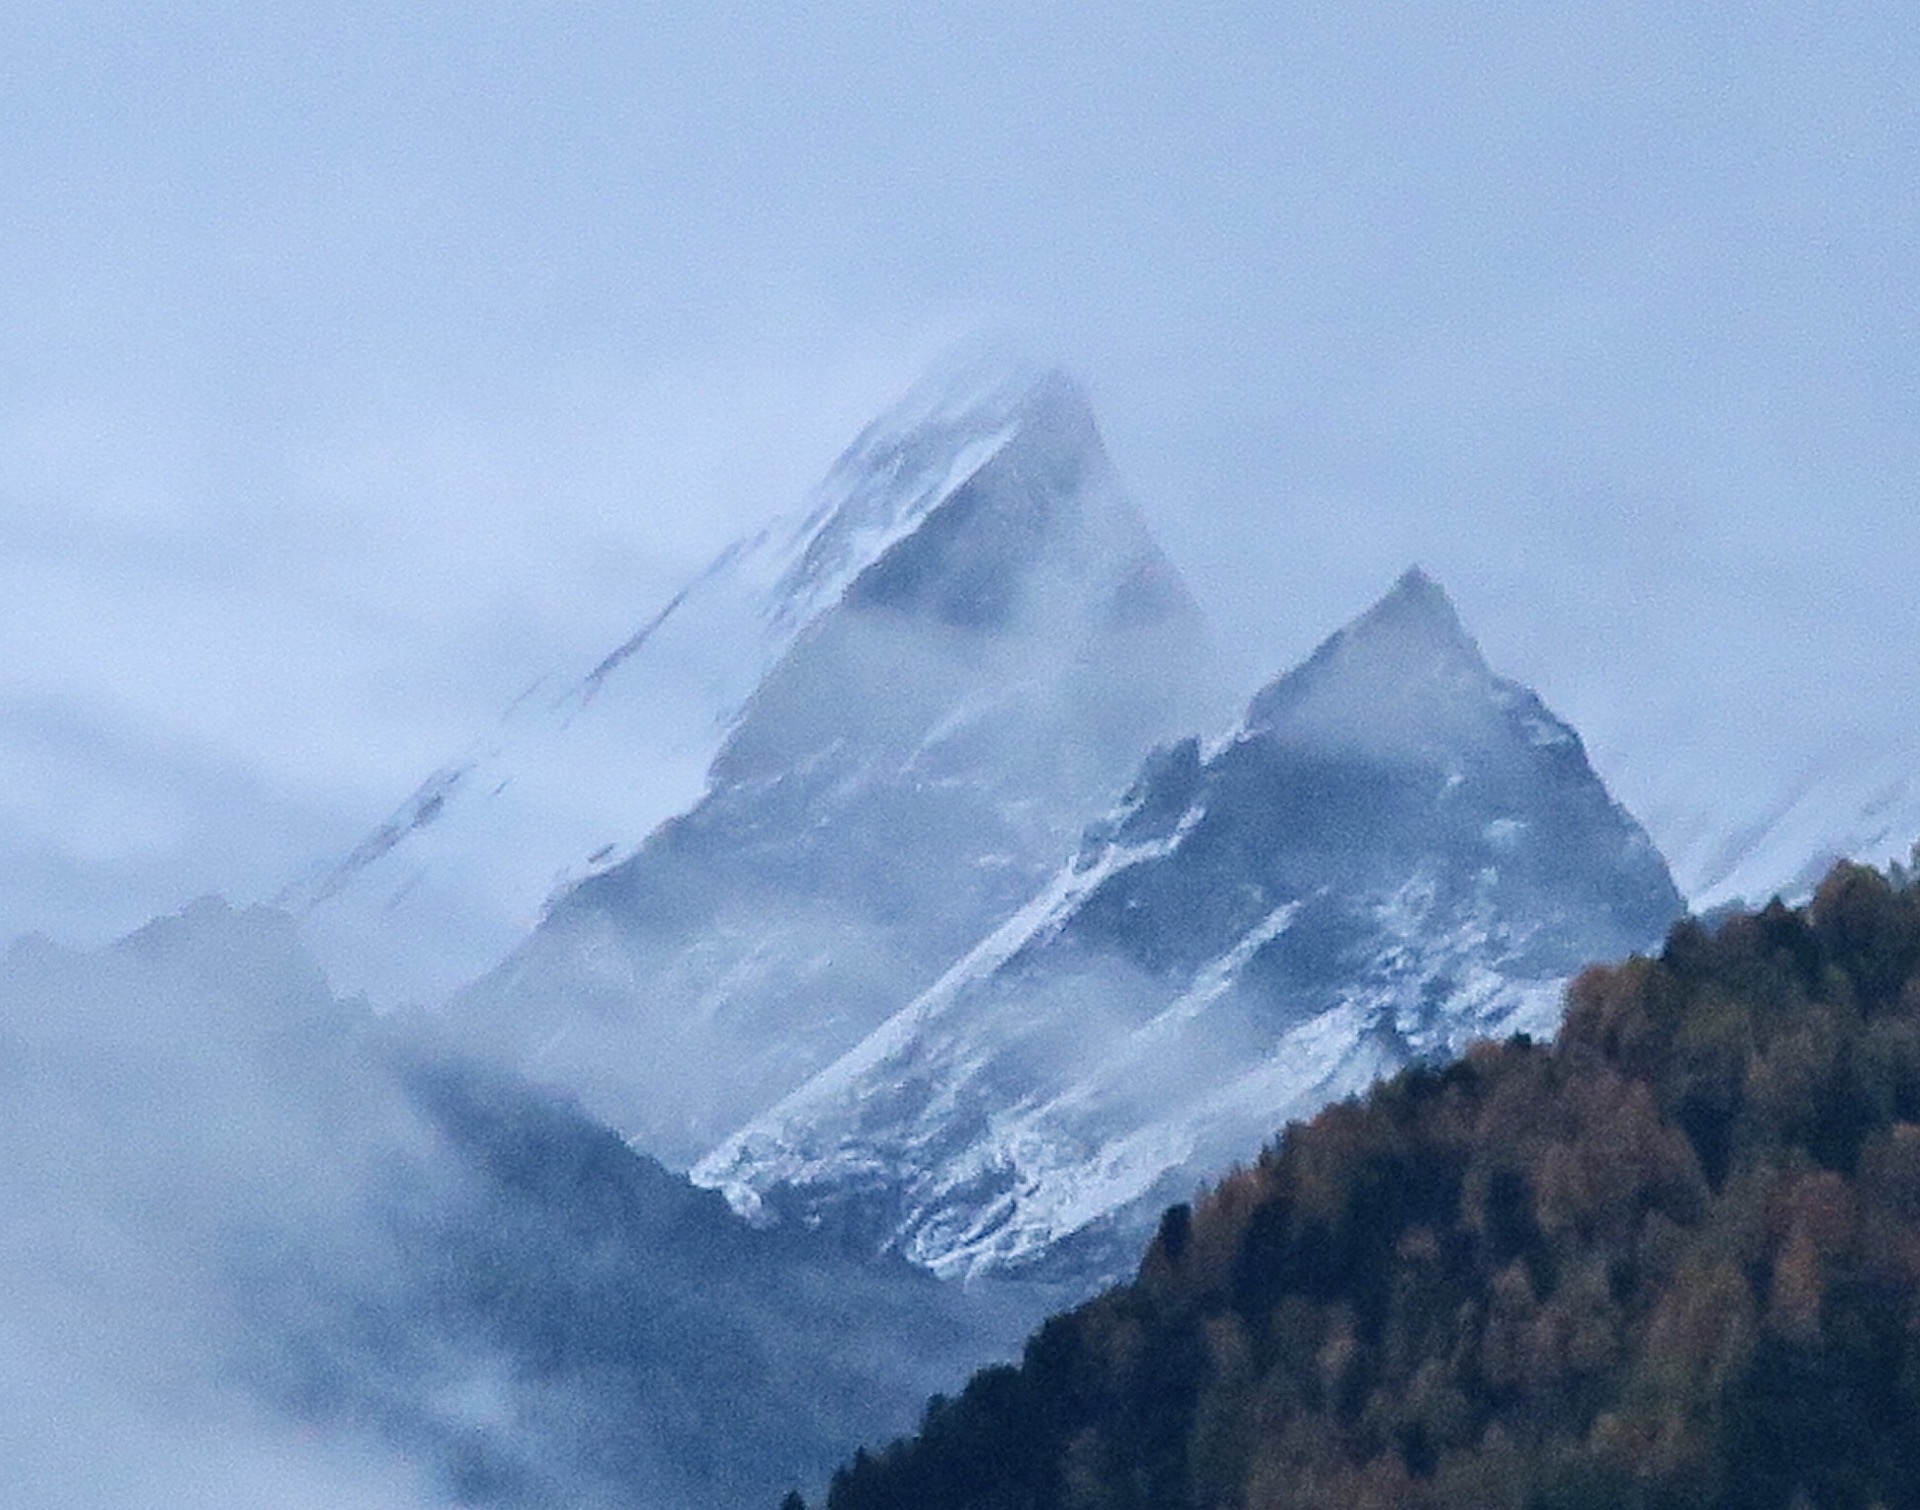 采尔马特村Zermatt藉着马特宏峰Matterhorn (德语）而闻名于世。马特宏峰高4478米，